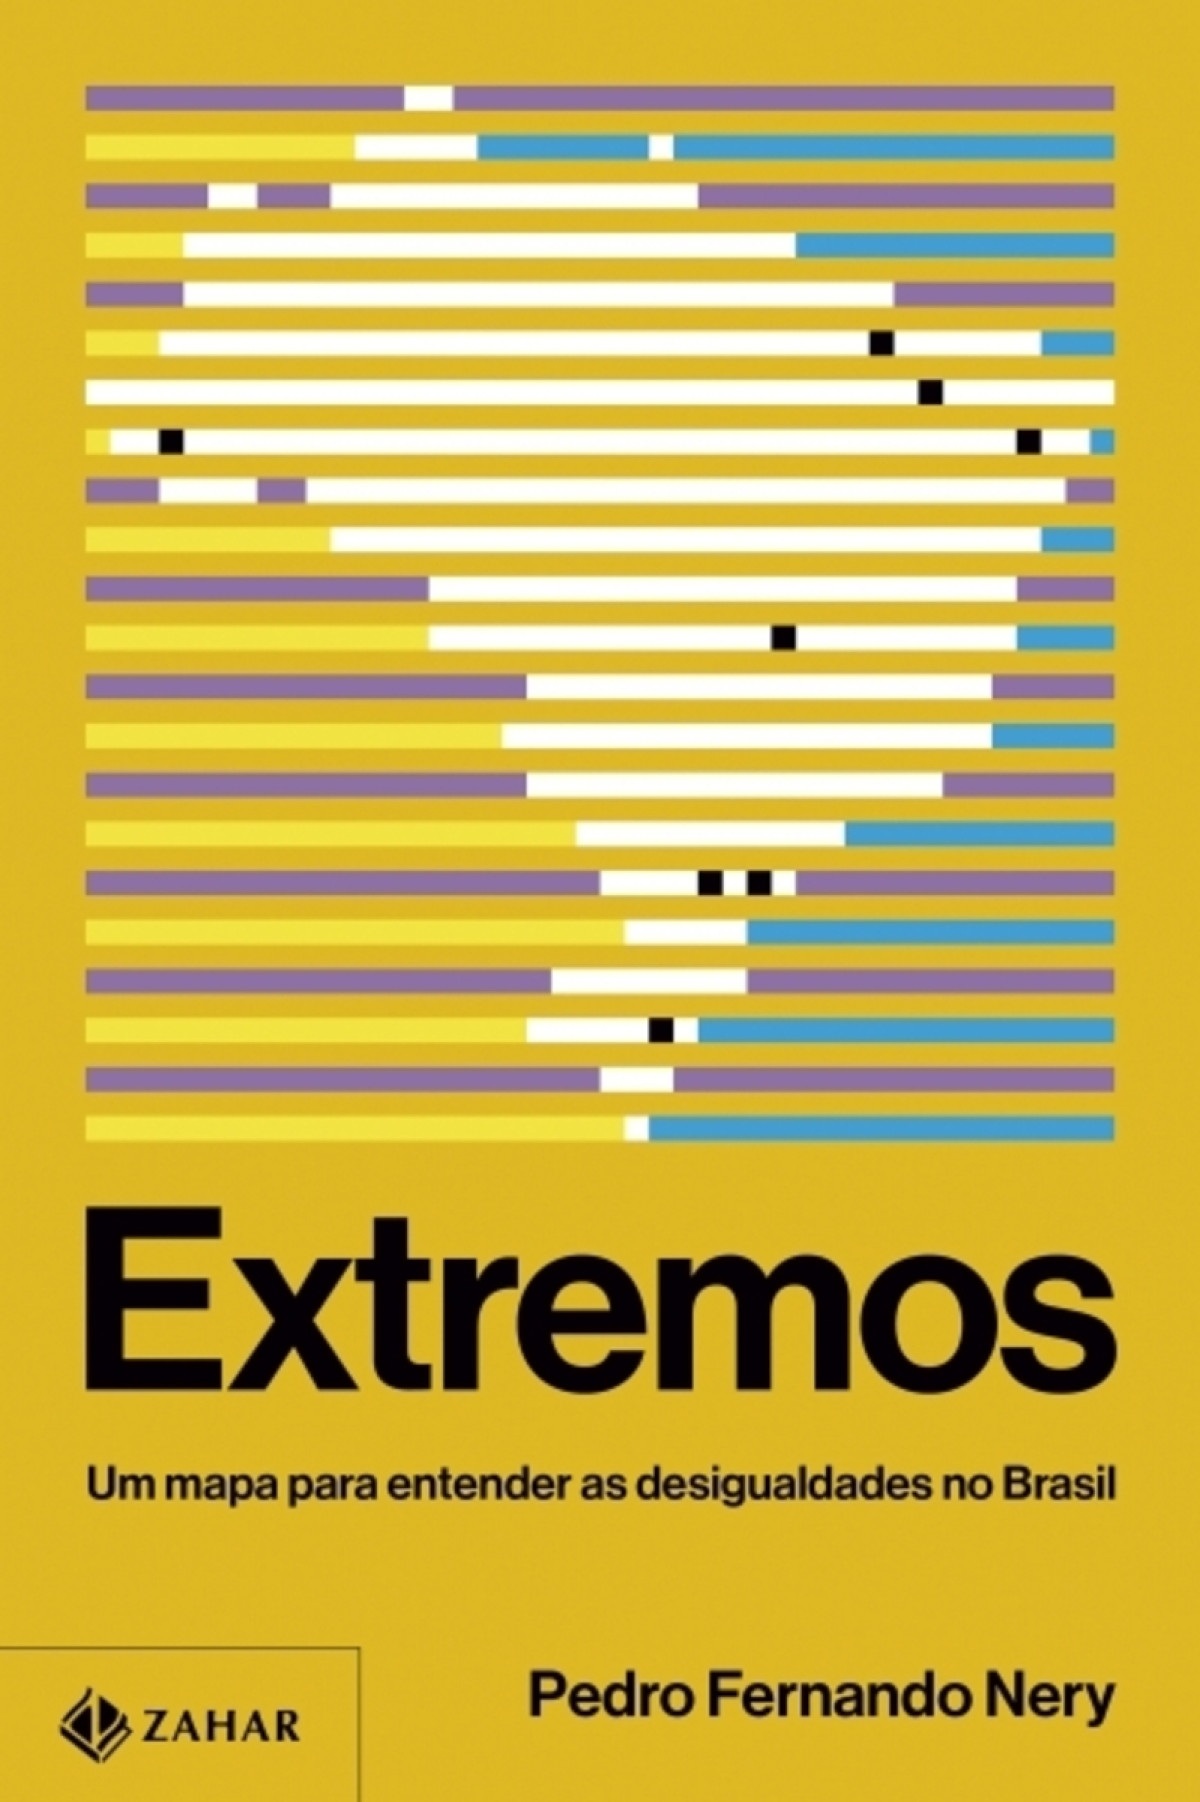 Extremos — Um mapa para entender as desigualdades no Brasil De Pedro Fernando Nery. Zahar, 368 páginas. R$ 119,90 